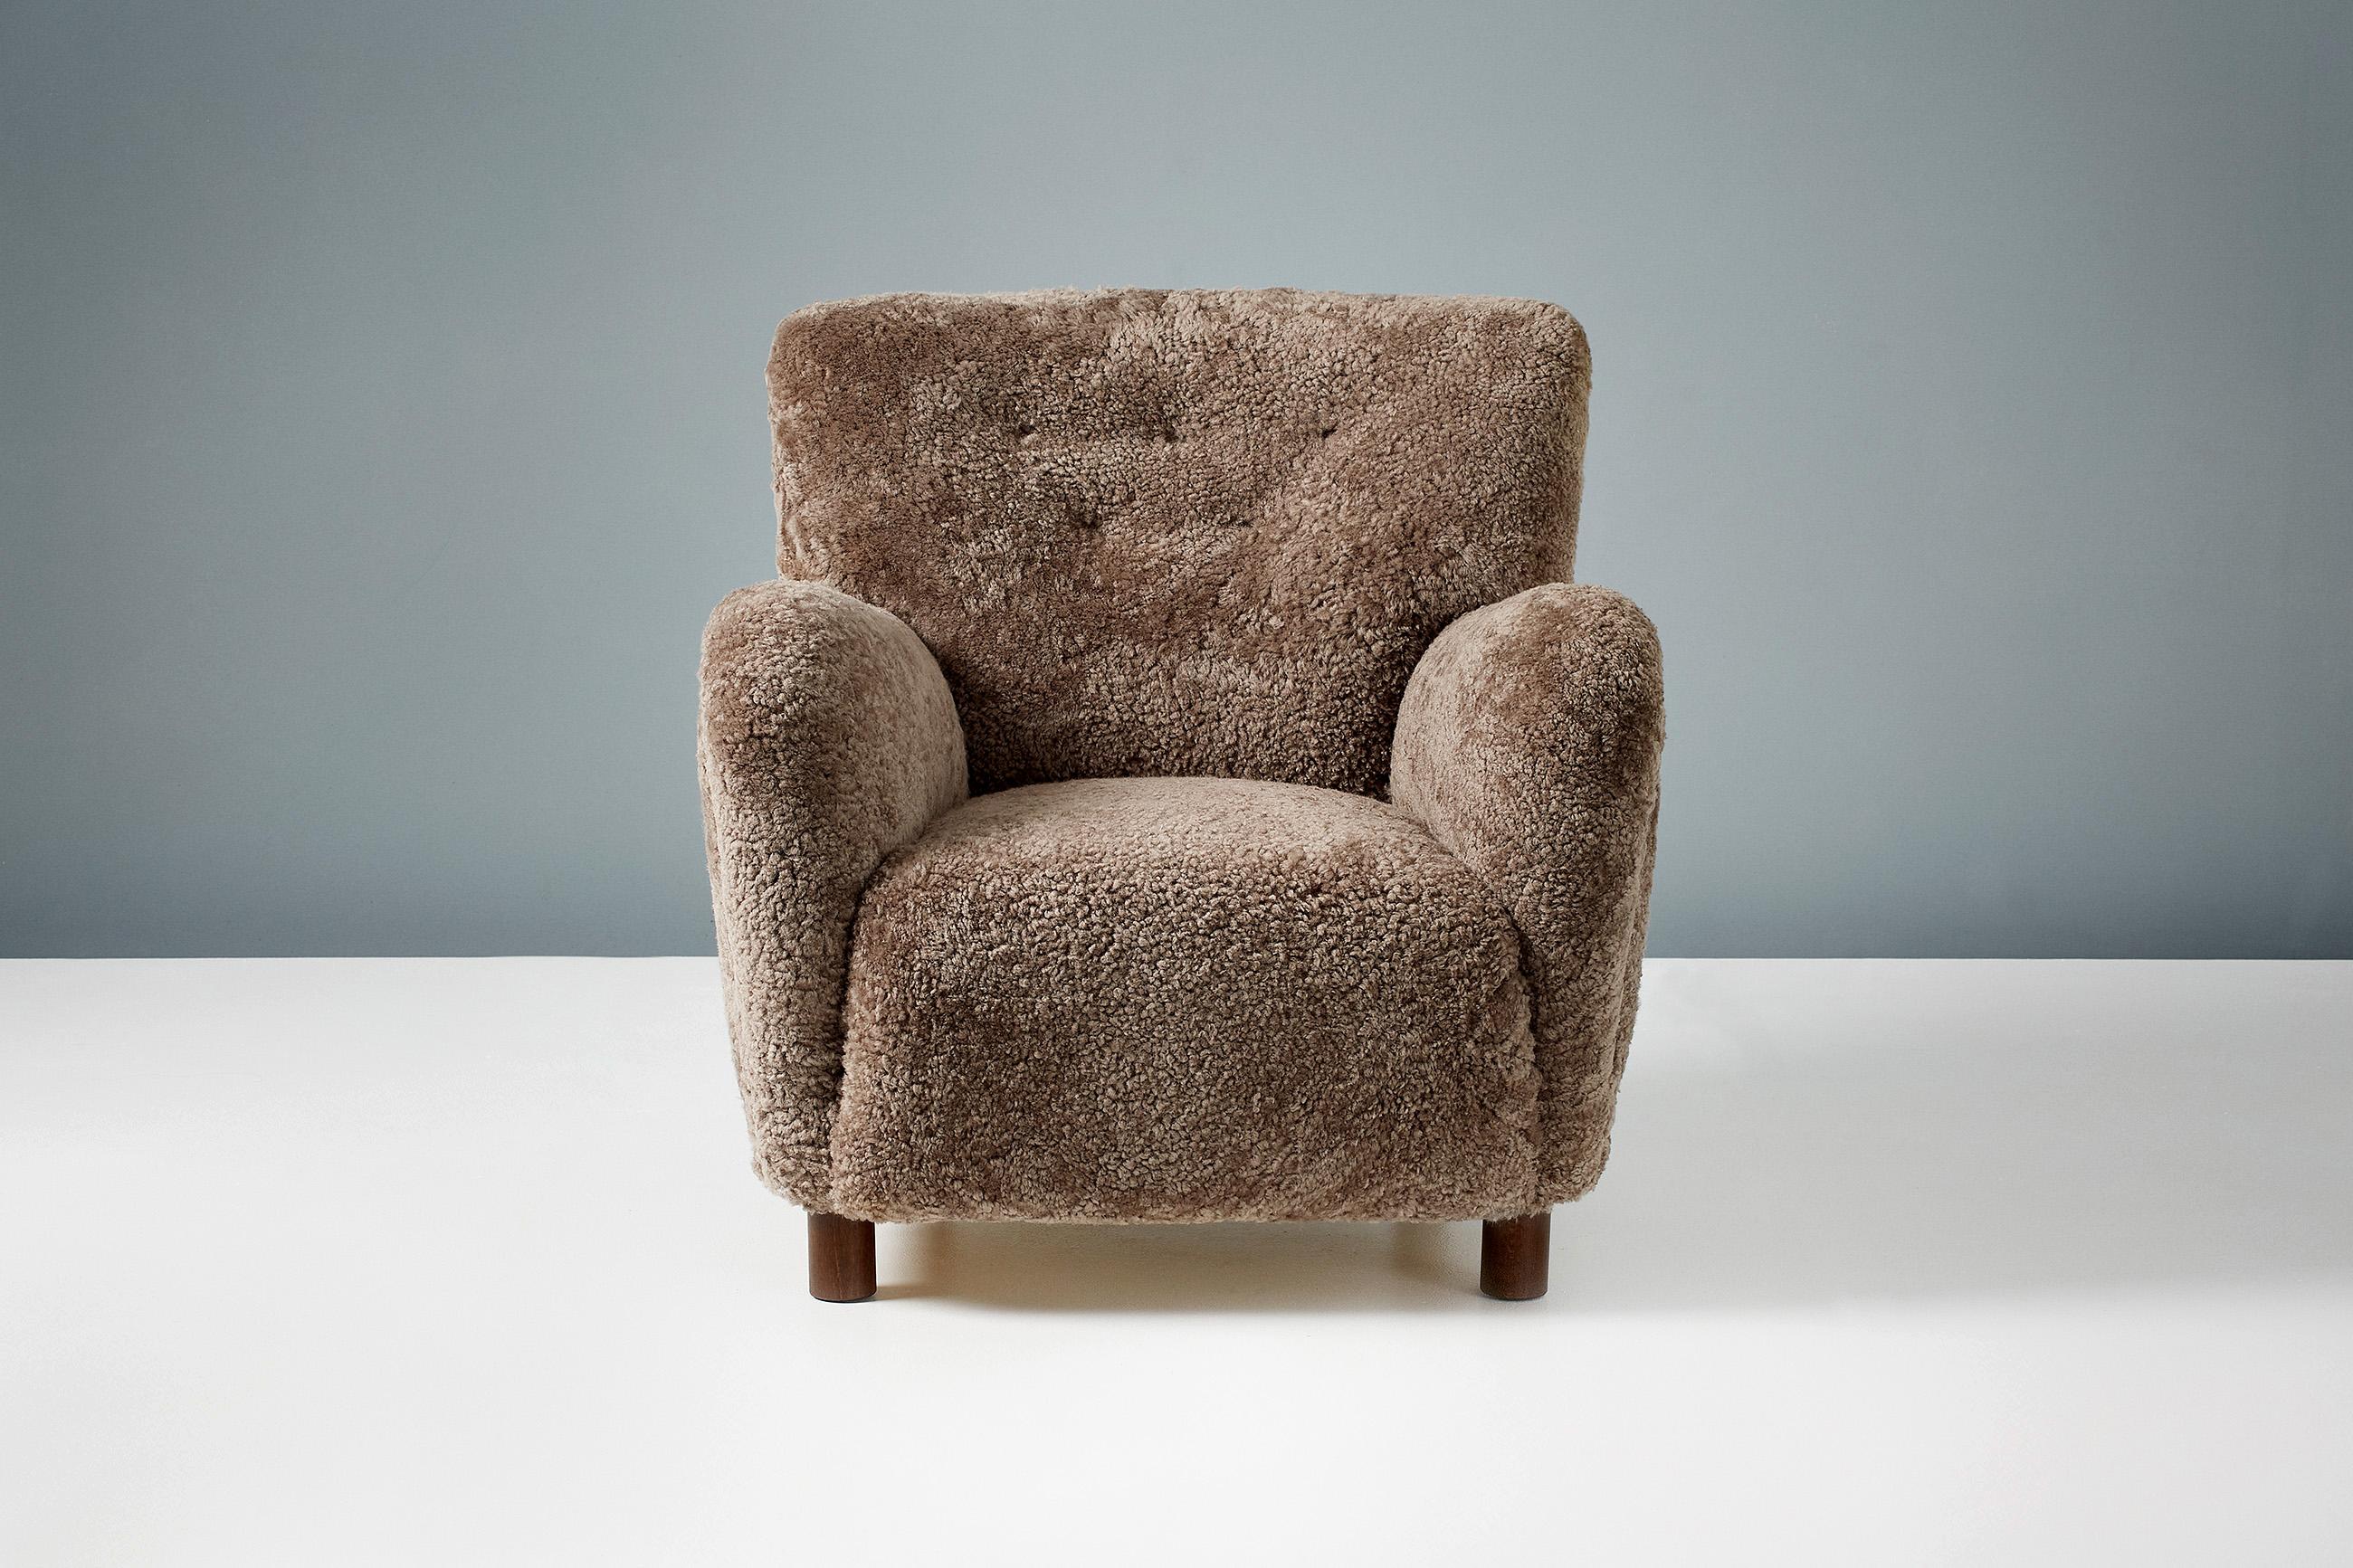 Dagmar Design - Sessel Modell 54.

Das Modell 54 gehört zu unserem Sortiment an maßgefertigten Polstermöbeln. Dieses Stück wurde in unseren Werkstätten in London entwickelt und von Hand aus den hochwertigsten Materialien hergestellt. Das Gestell